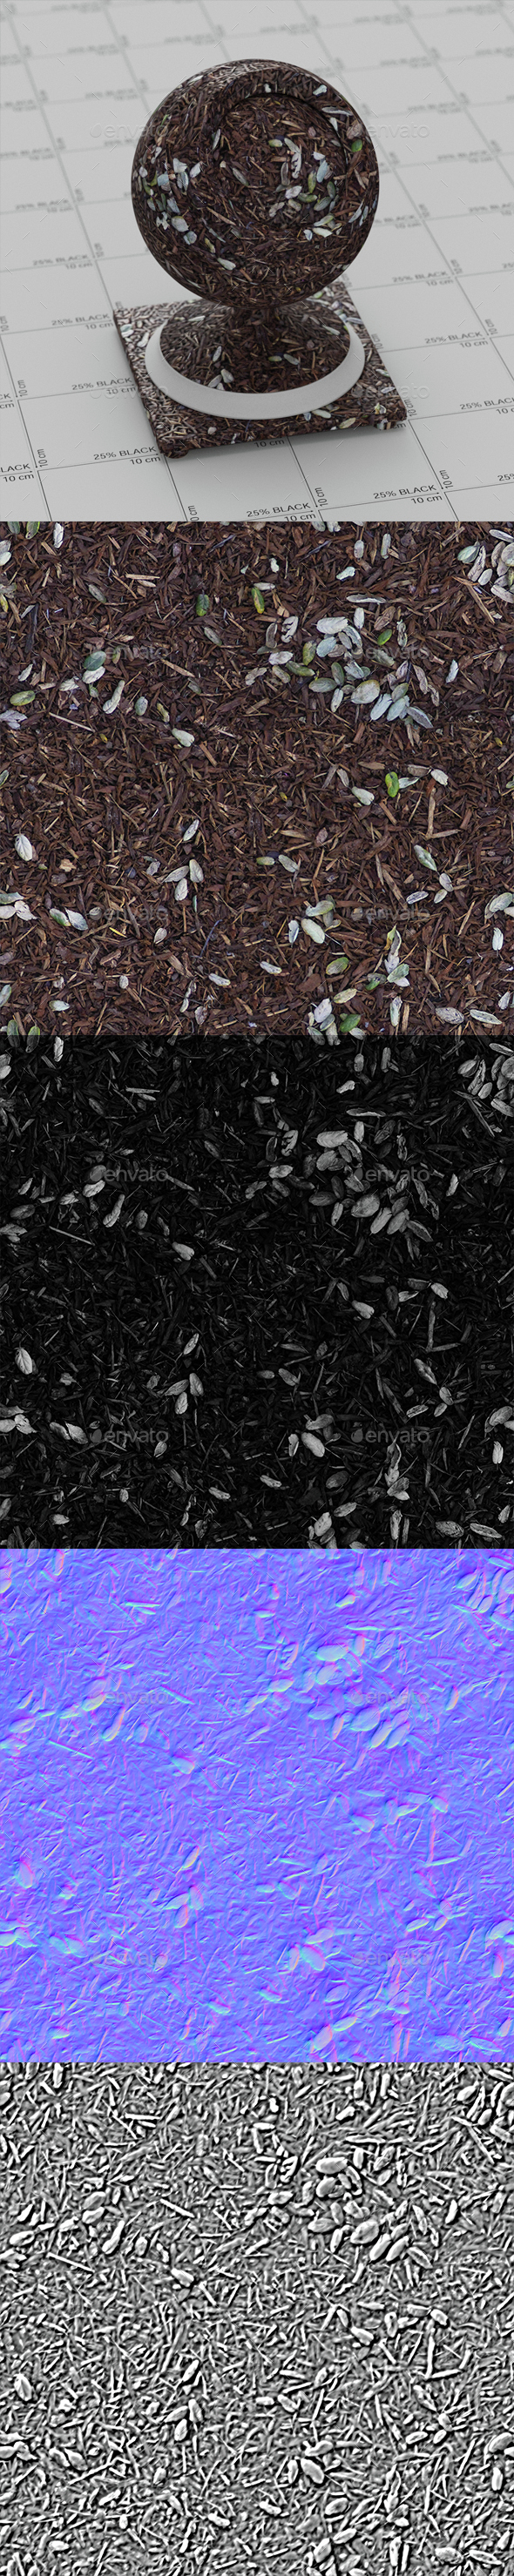 Ground forest texture - 3Docean 15342609